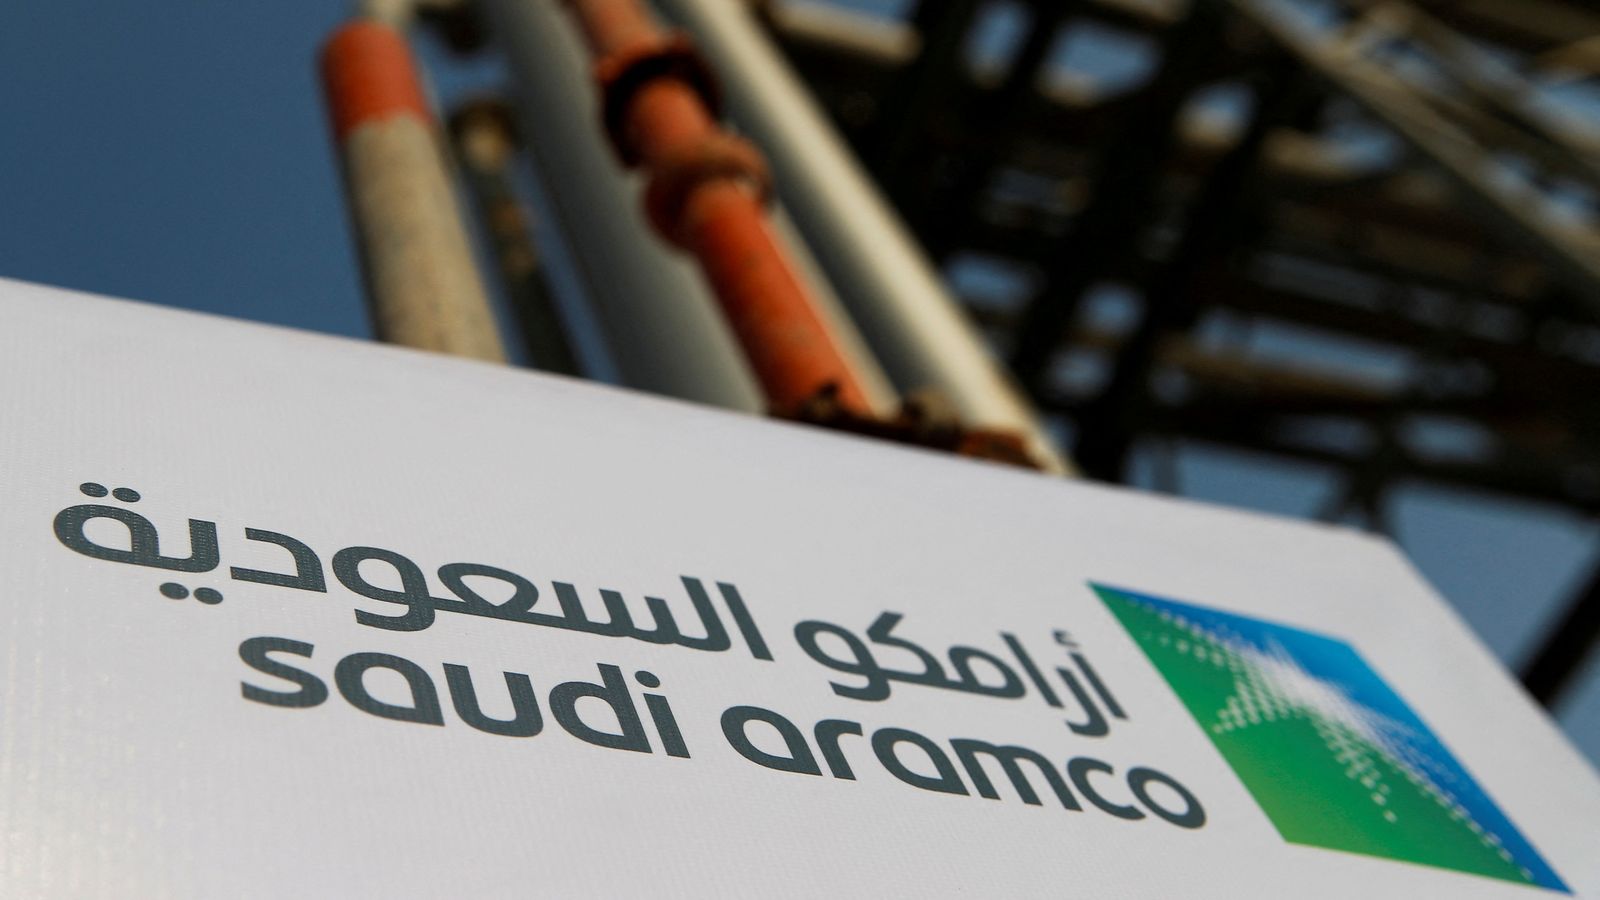 Saudi Aramco ожидает увеличения чистой прибыли на 90% во втором квартале 2022 года |  Новости мира